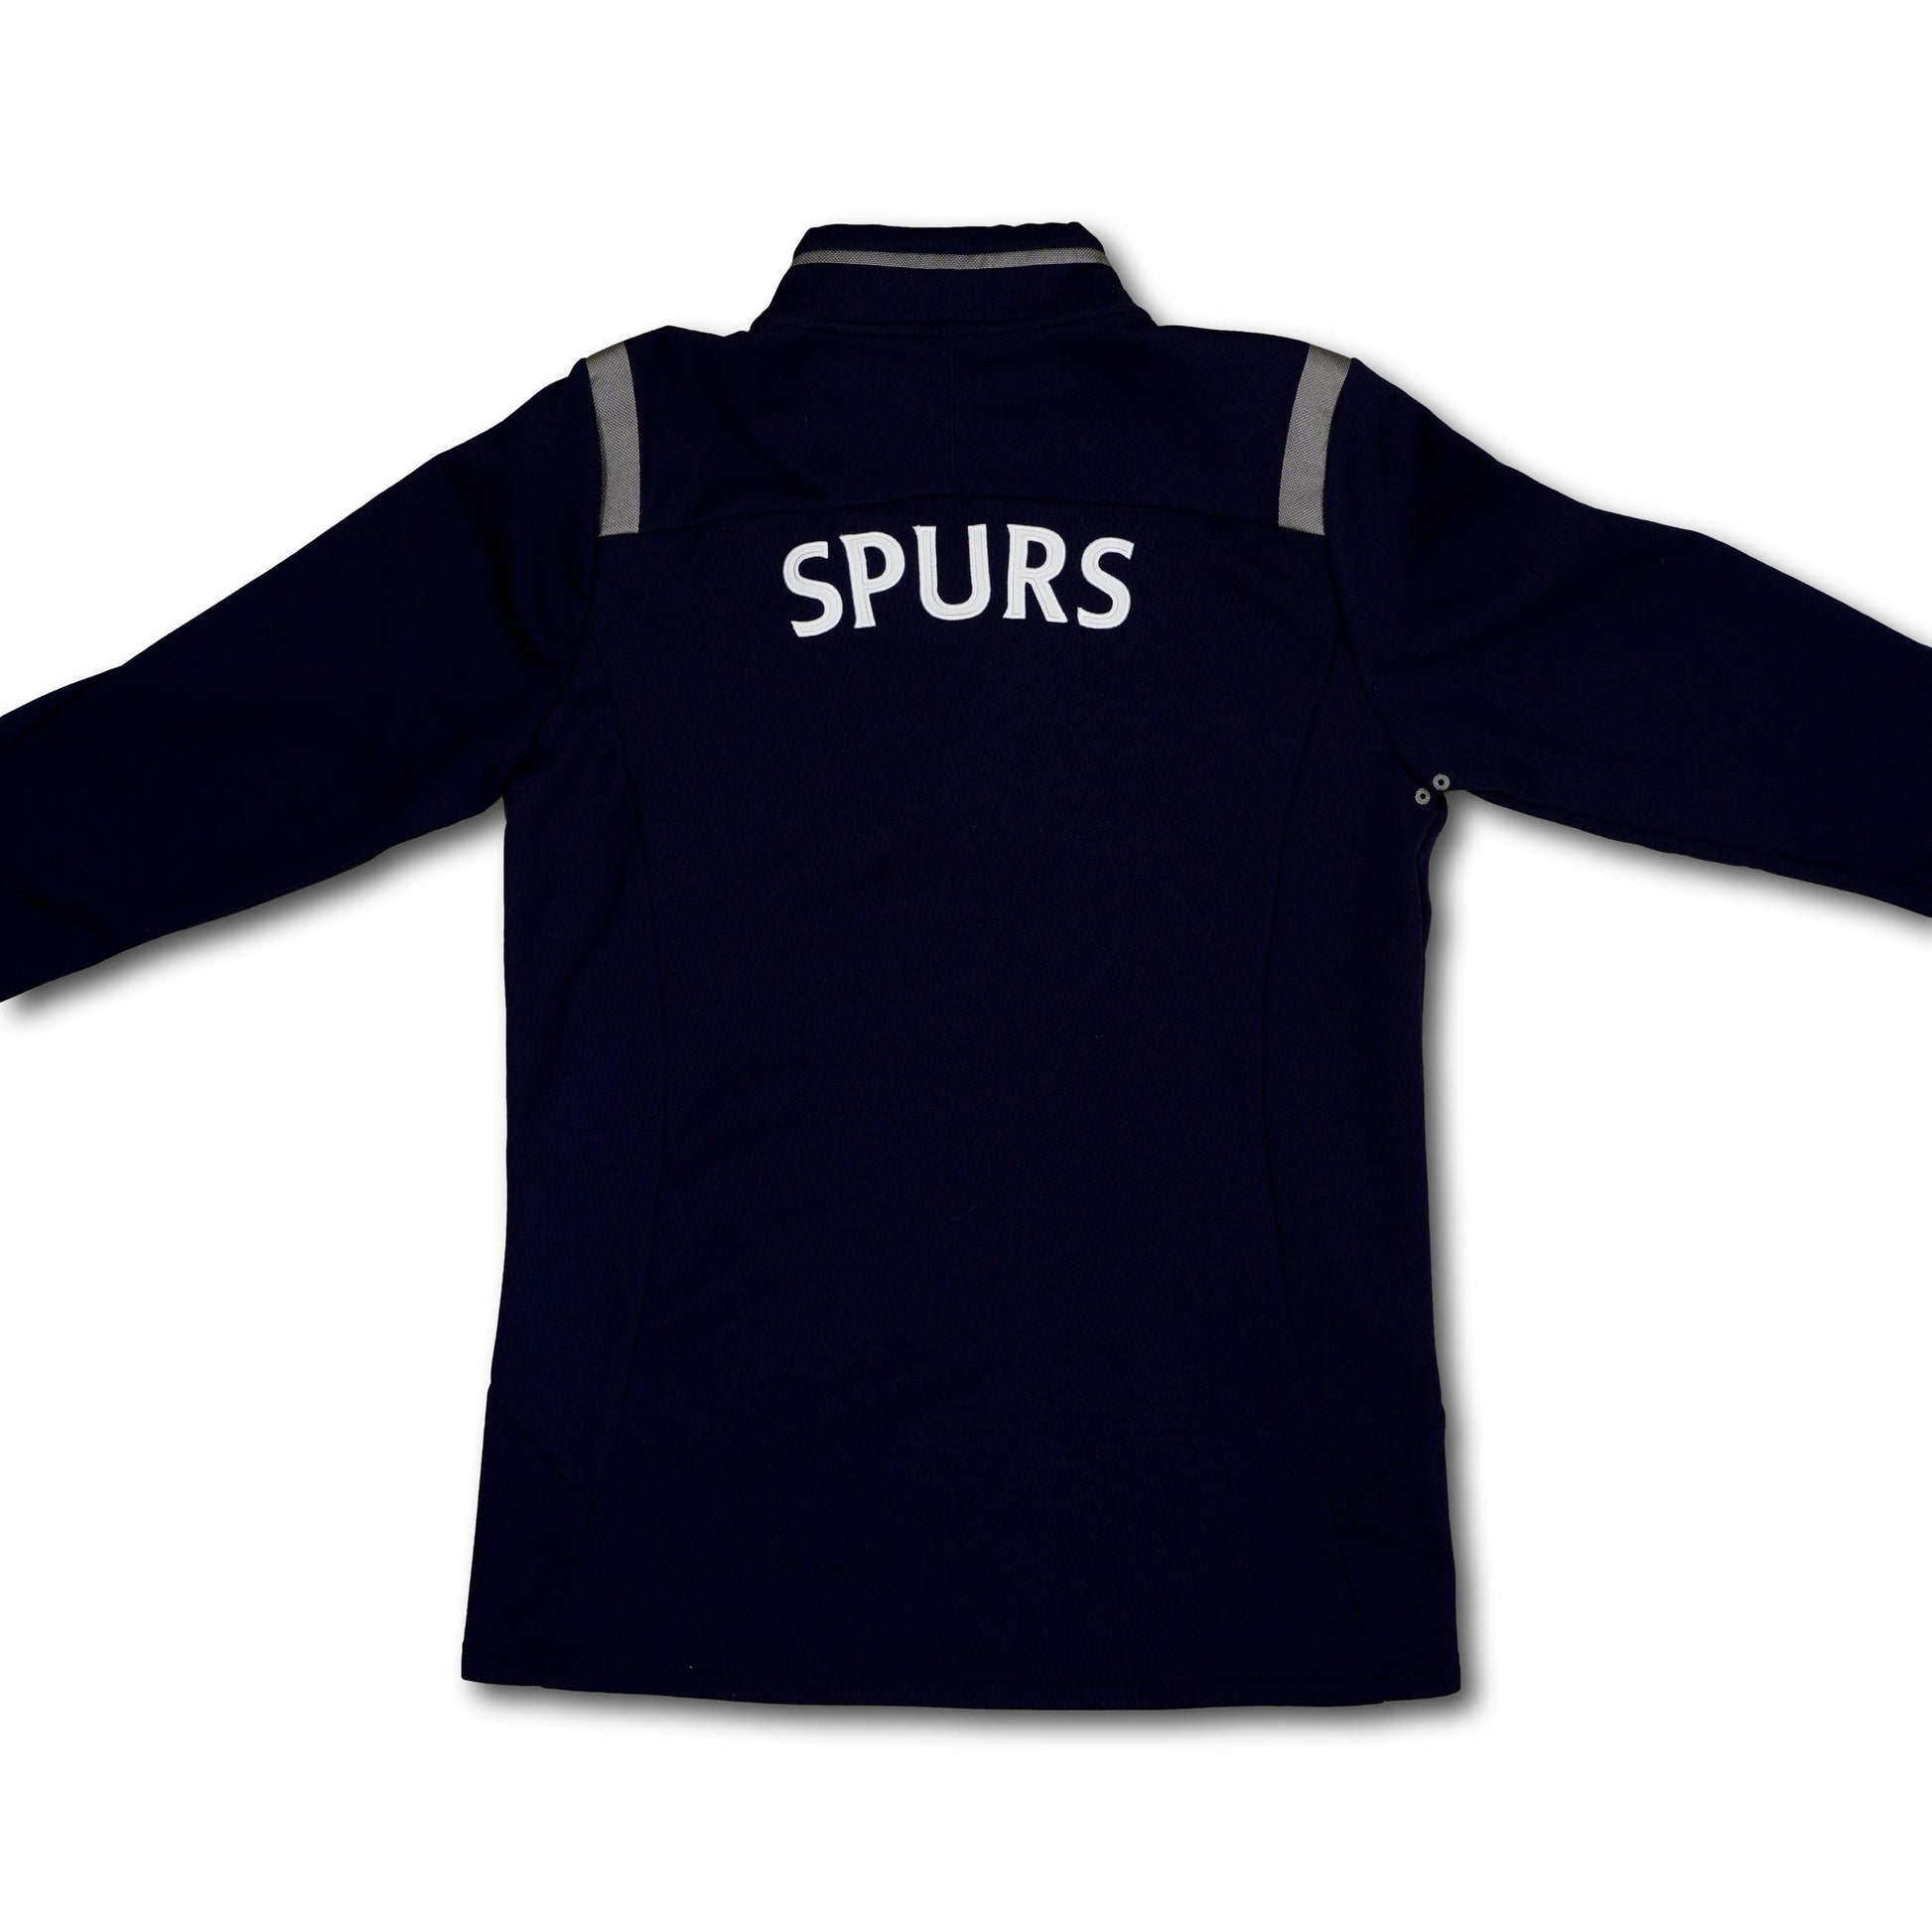 Football shirt soccer Tottenham Hotspur Away 2014/2015 Under Armour Jersey  #30